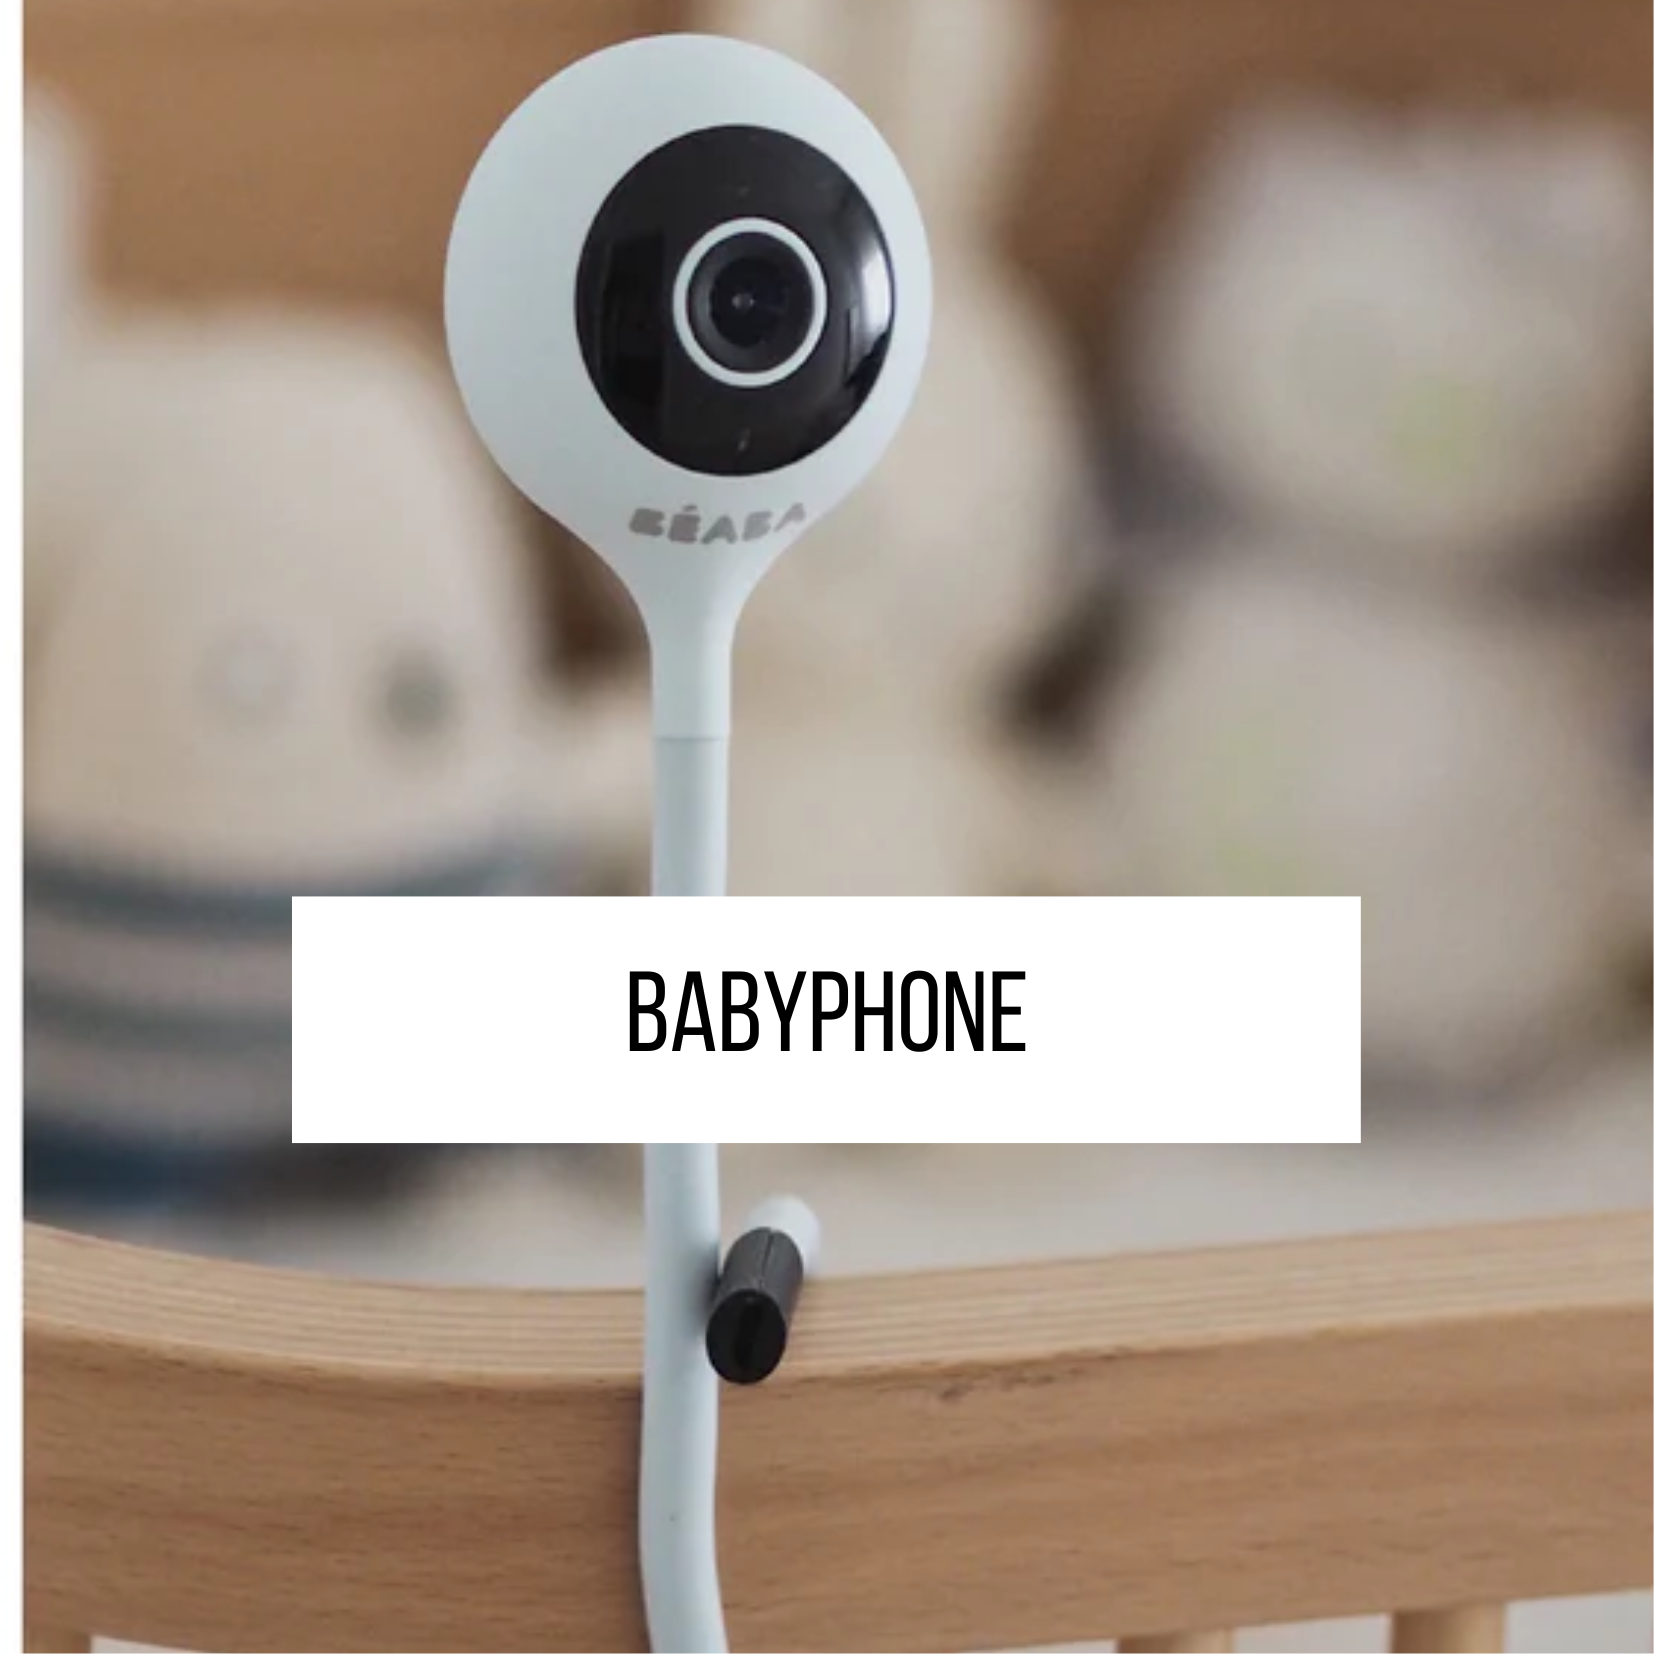 Babyphone Beaba Surveillance Bébé Chambre Puériculture